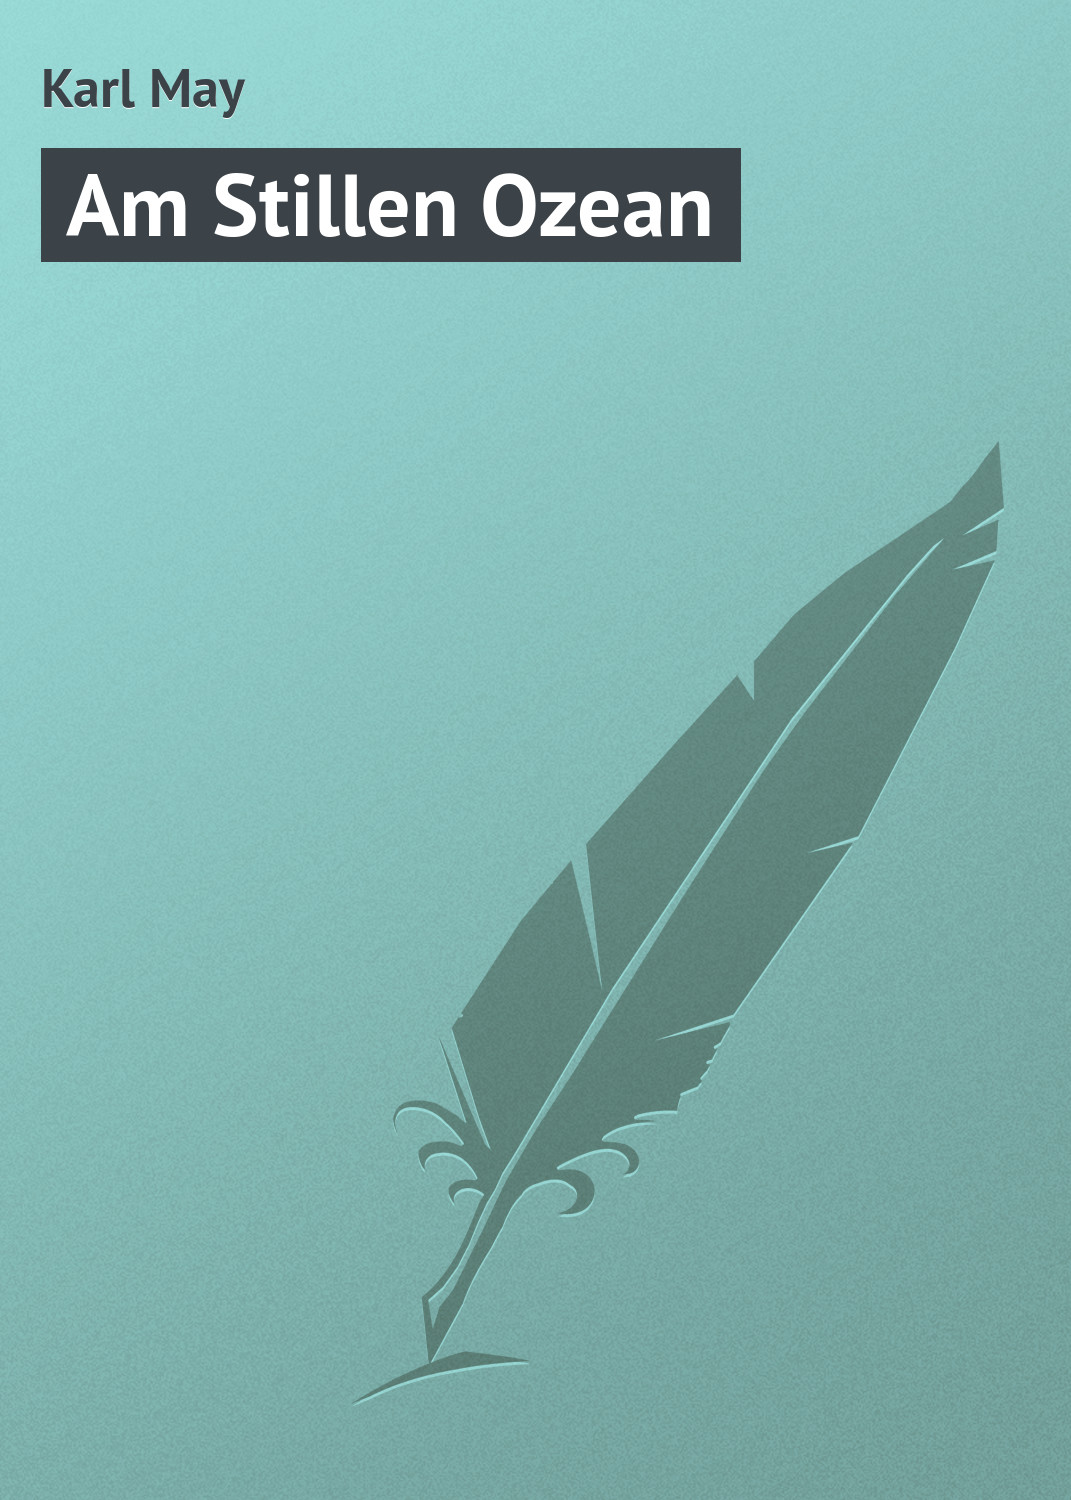 Книга Am Stillen Ozean из серии , созданная Karl May, может относится к жанру Зарубежная старинная литература, Зарубежная классика. Стоимость электронной книги Am Stillen Ozean с идентификатором 21106870 составляет 5.99 руб.